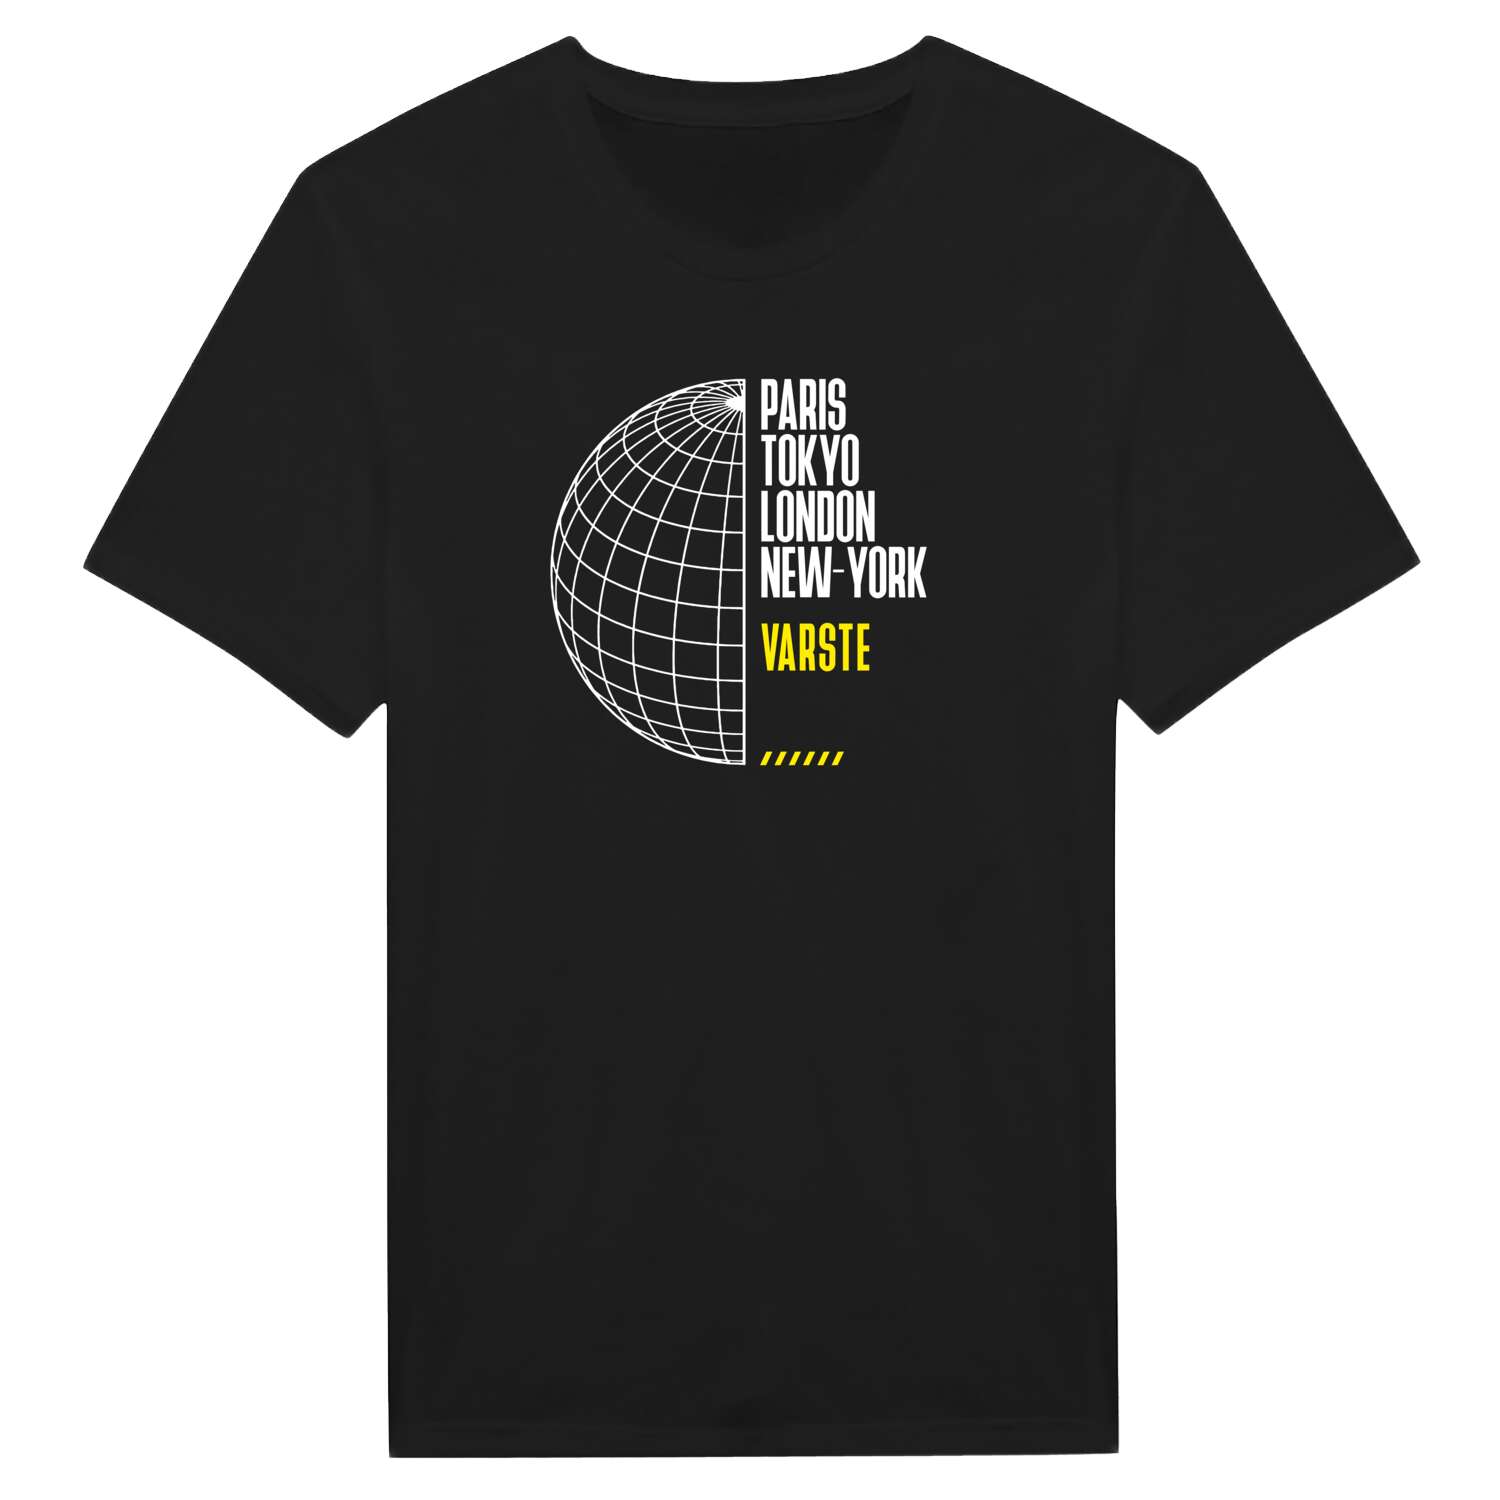 Varste T-Shirt »Paris Tokyo London«